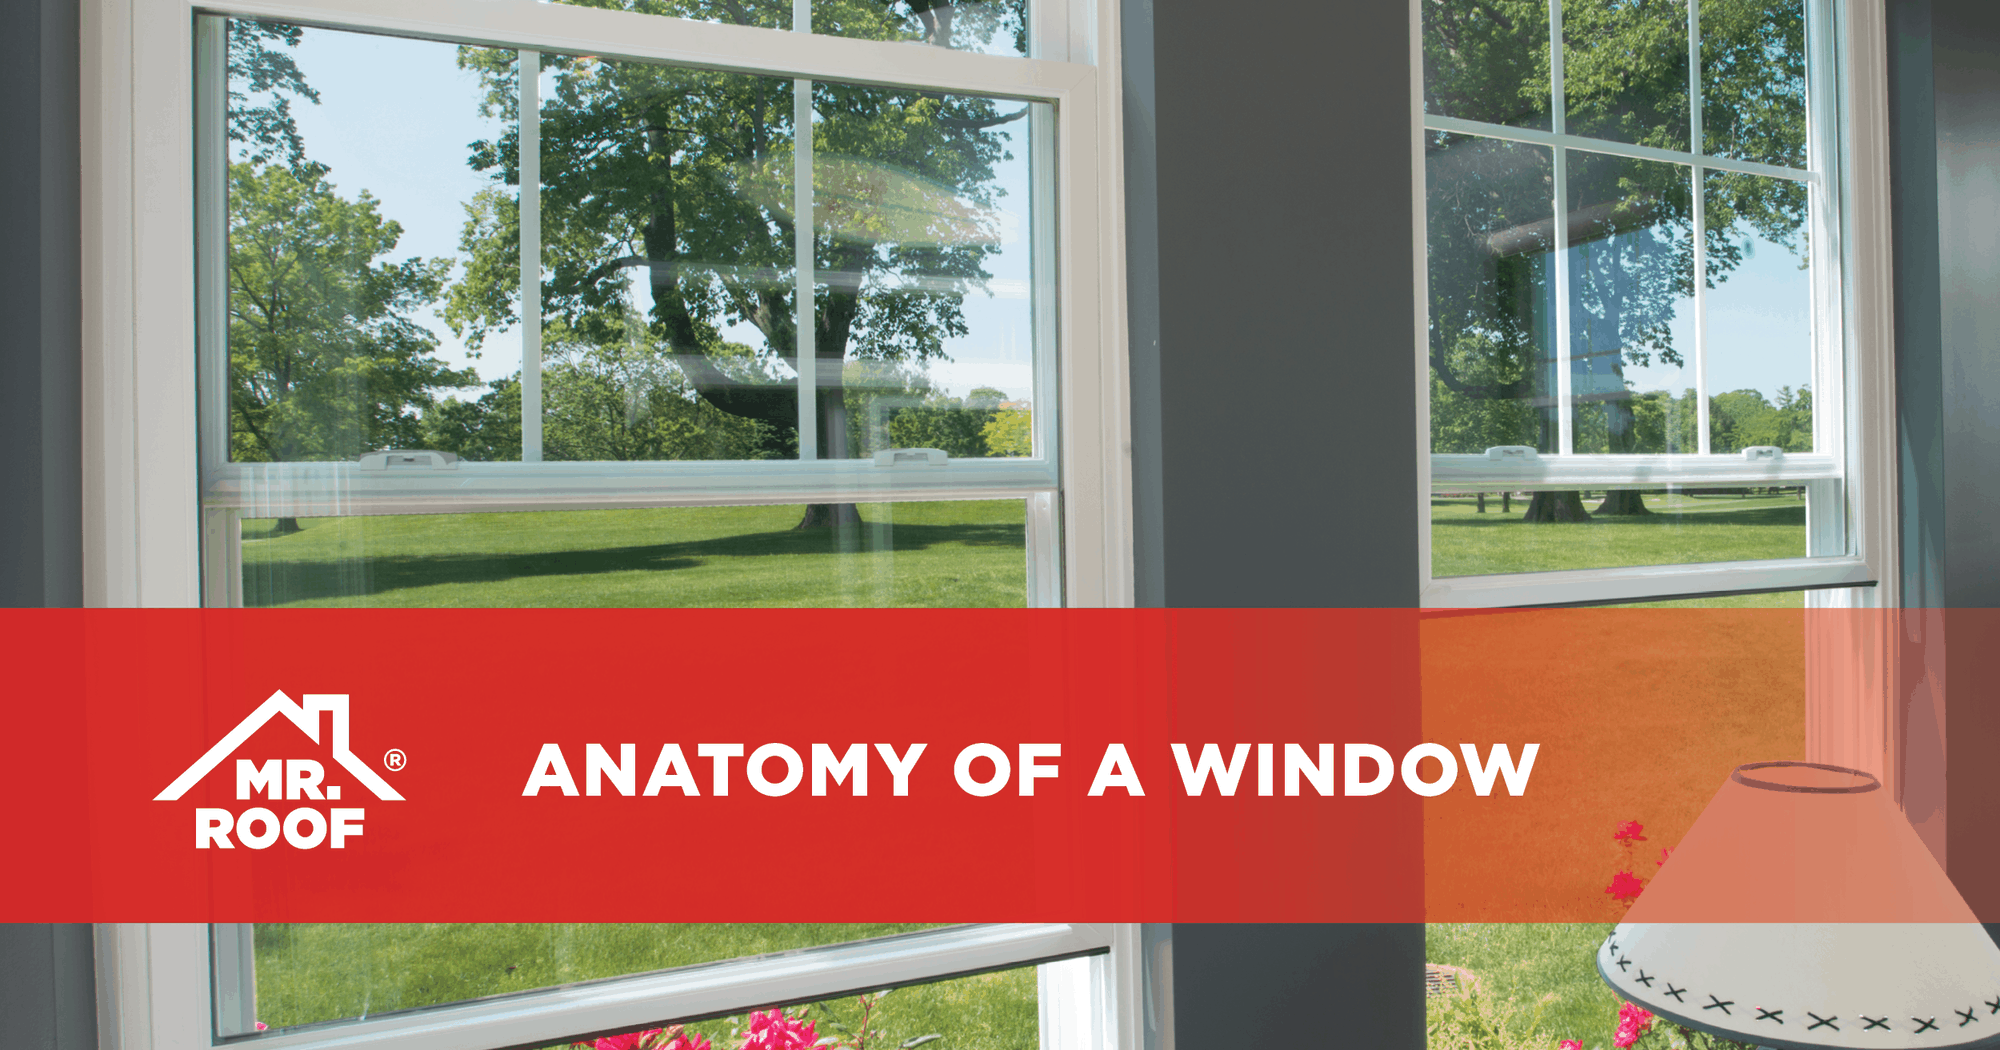 Anatomy of a window